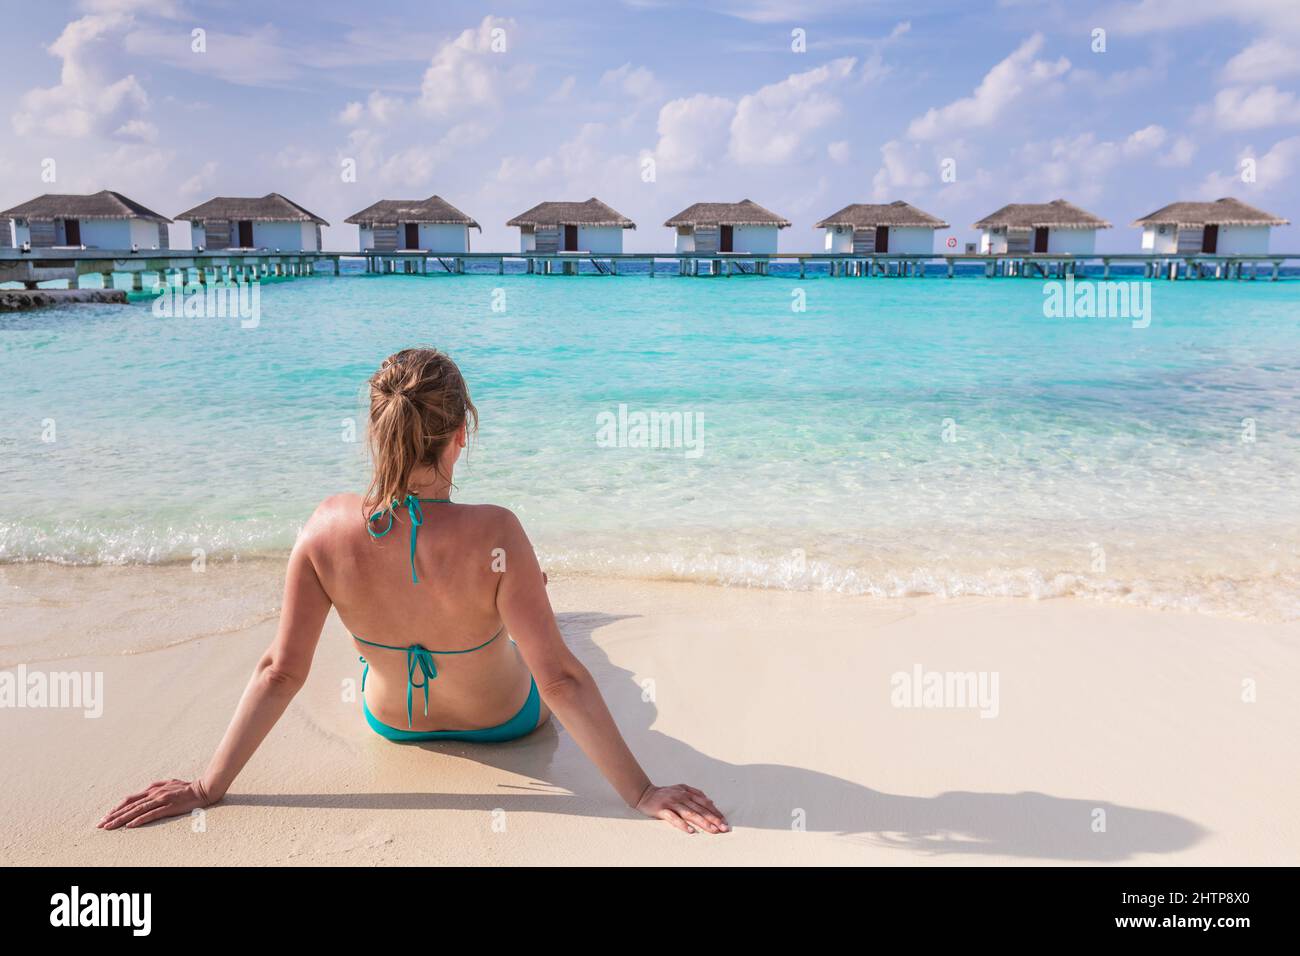 Vacances à la plage avec femme soleil se baignant sur le sable blanc dans un luxueux hôtel Resort aux Maldives avec villas sur l'eau, eau de mer turquoise et bleu Banque D'Images